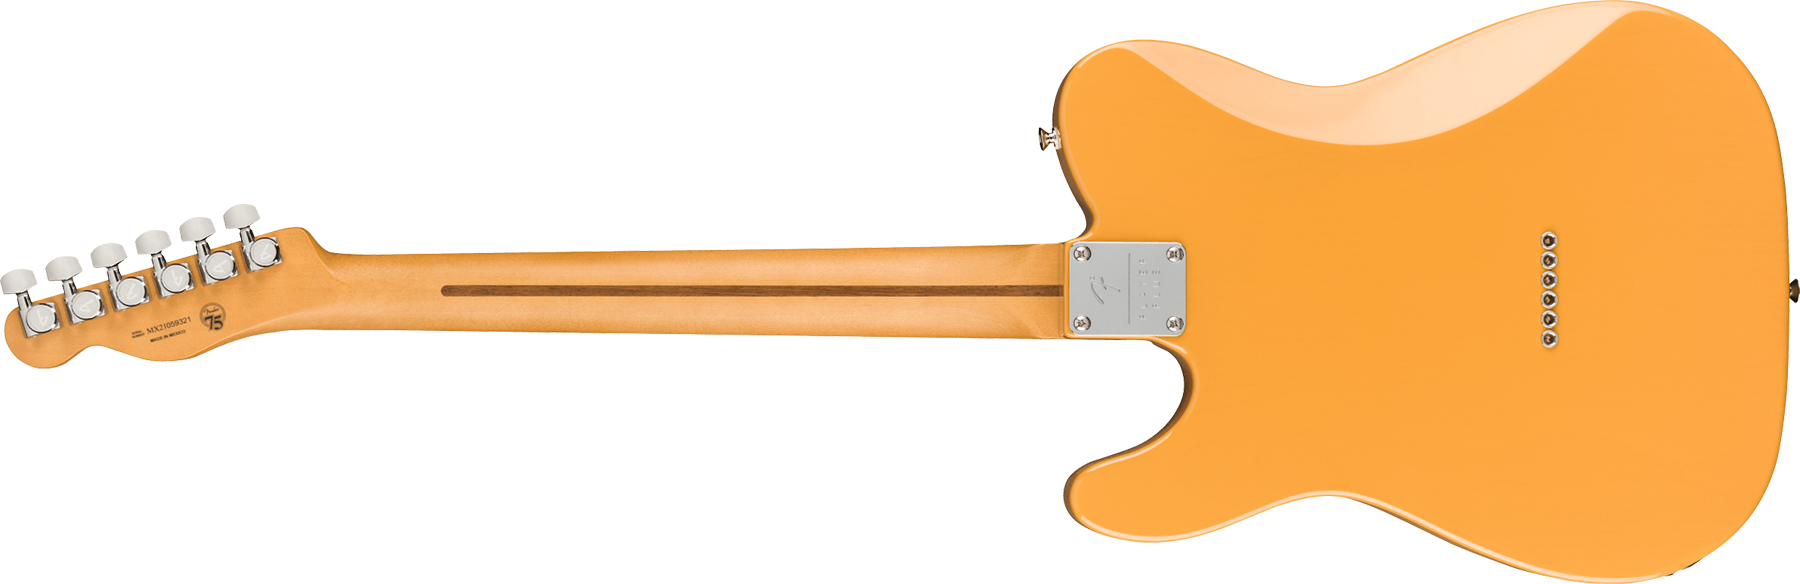 Fender Tele Player Plus Nashville Mex 3s Ht Mn - Butterscotch Blonde - Guitarra eléctrica con forma de tel - Variation 1